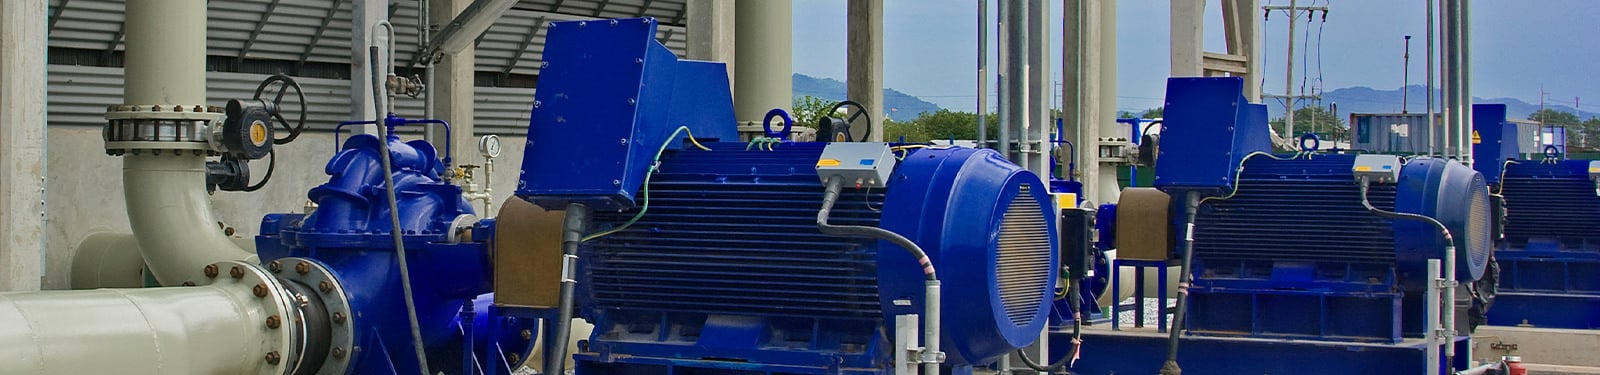 Pumps & Process Equipment